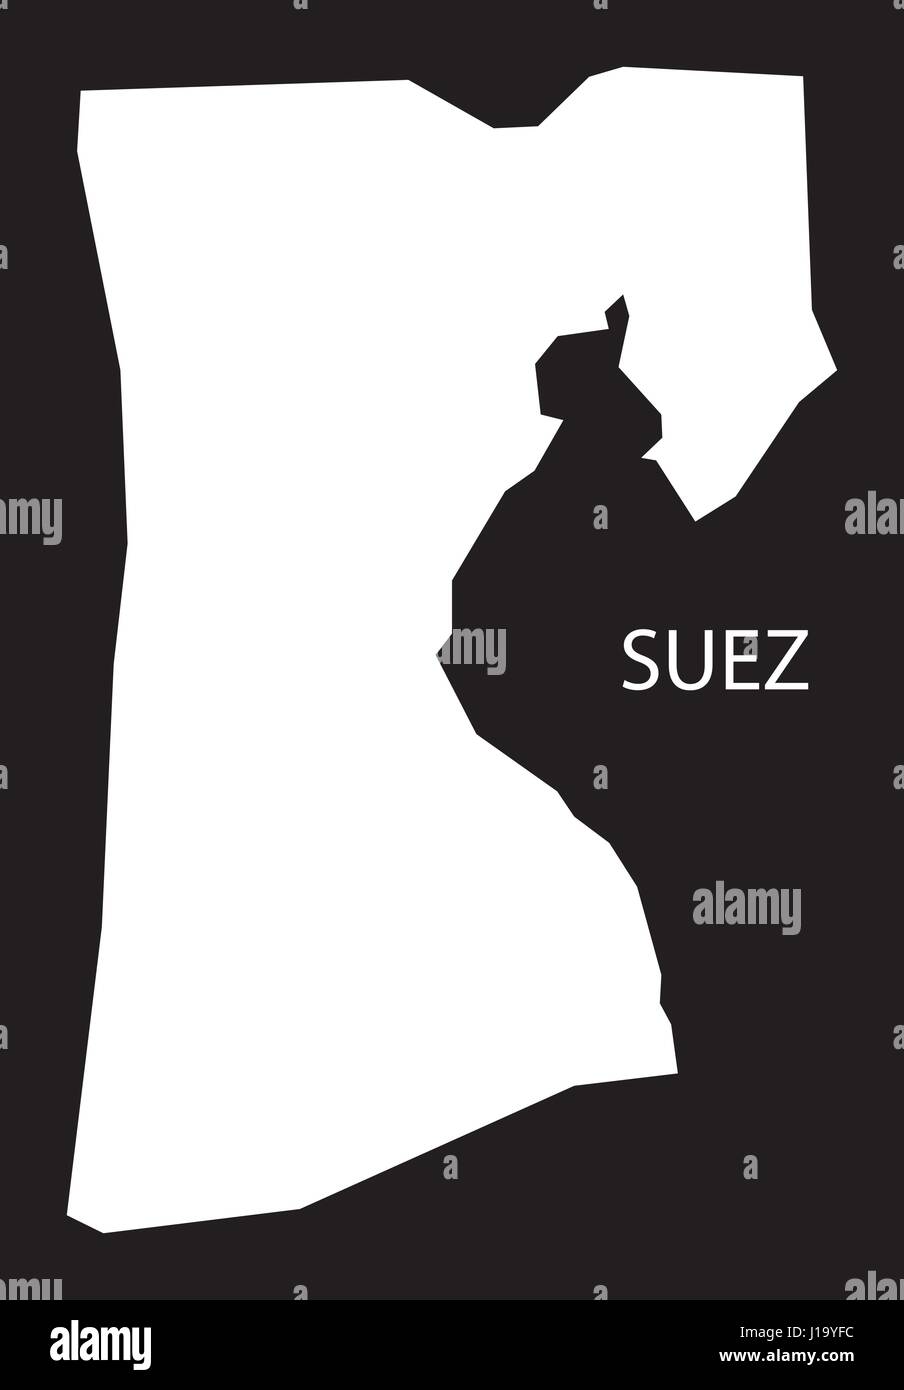 Suez Ägypten Karte schwarz invertiert Silhouette Abbildung Stock Vektor